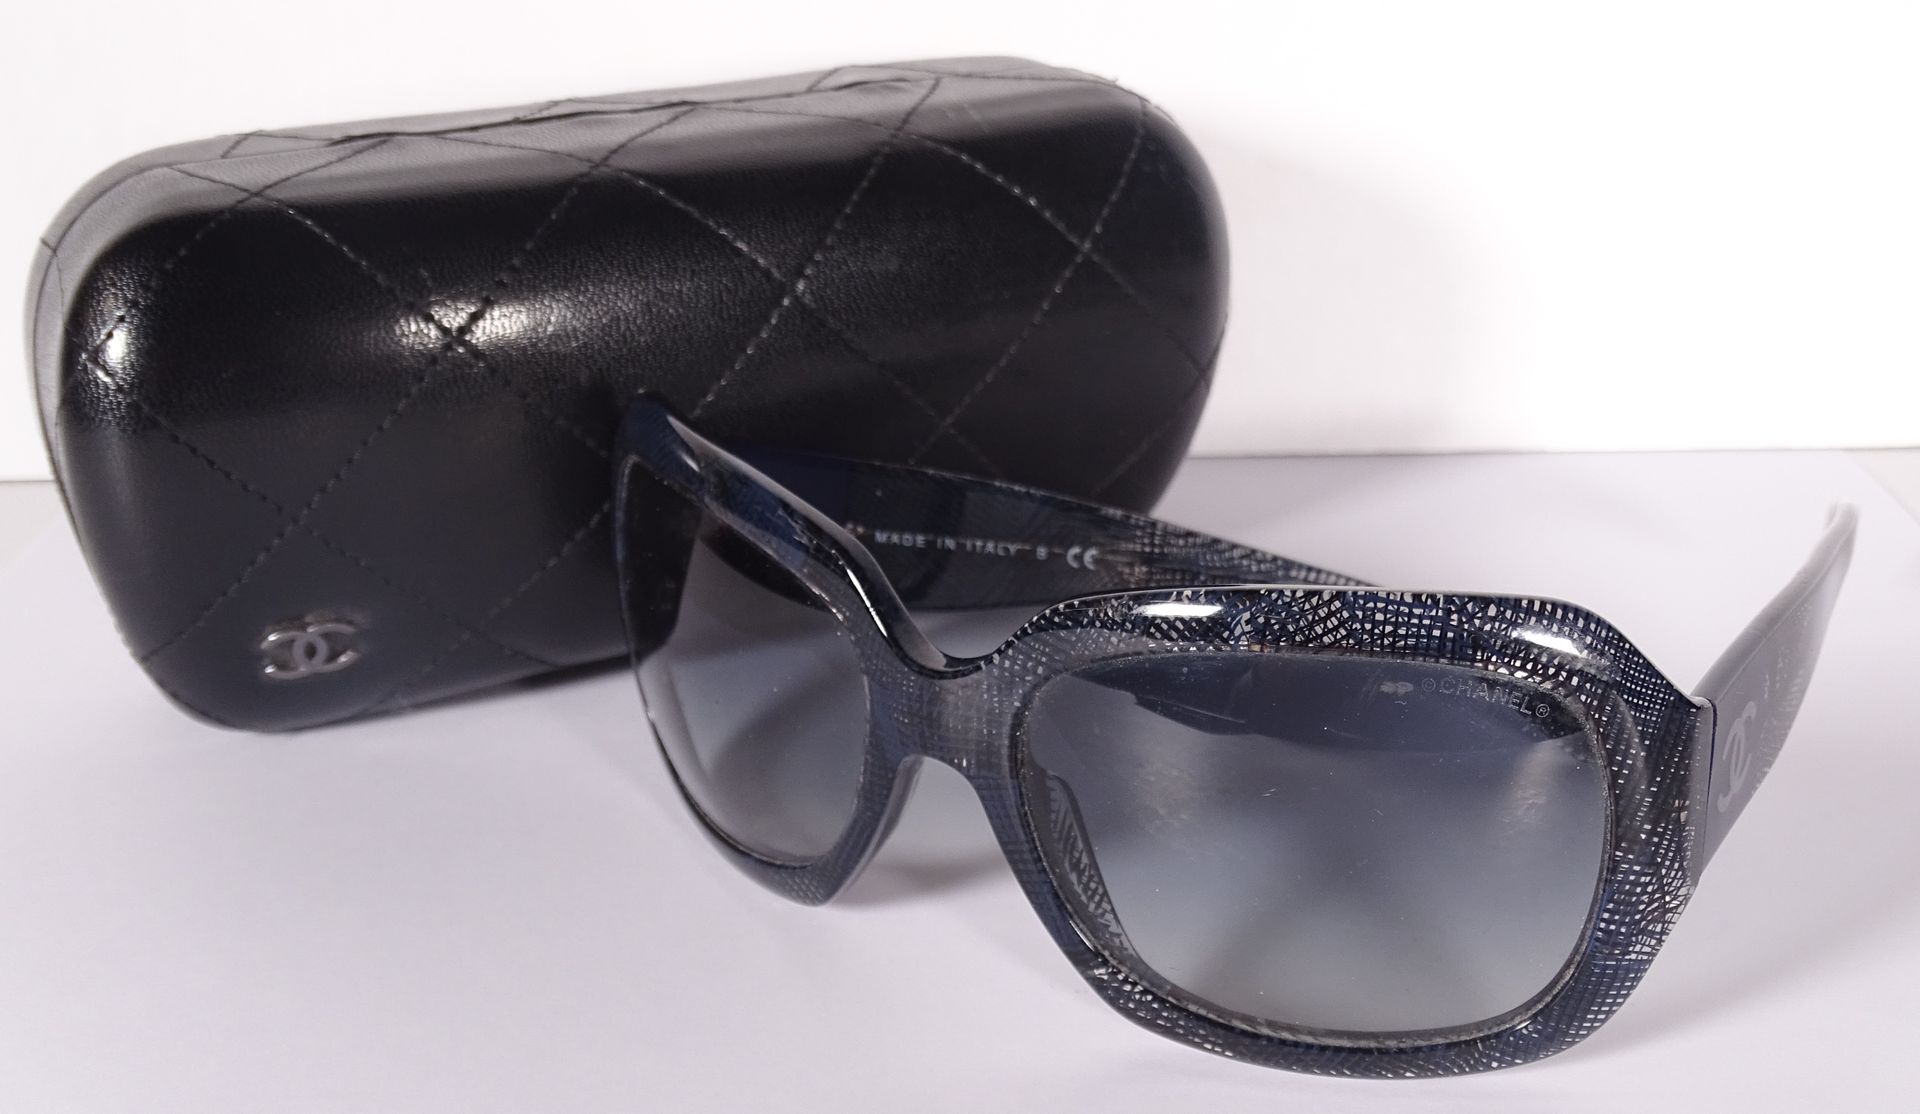 CHANEL Par de gafas de sol de pvc azul marino translúcido con rejilla.

En su es&hellip;